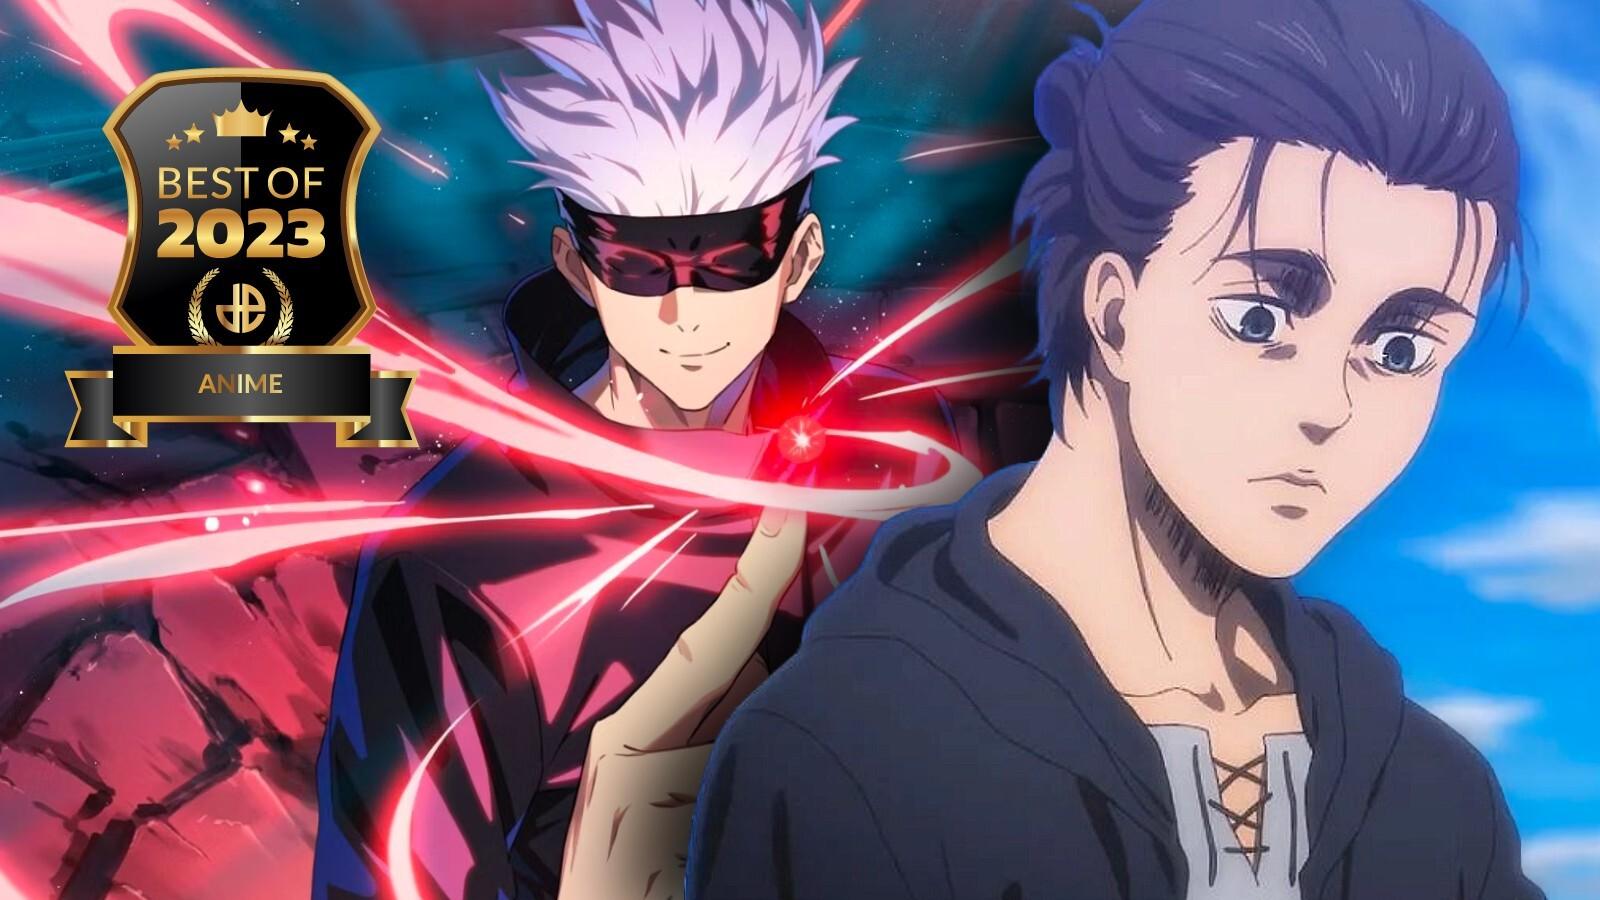 Better Anime: Lista Completa dos Melhores Animes em 2023